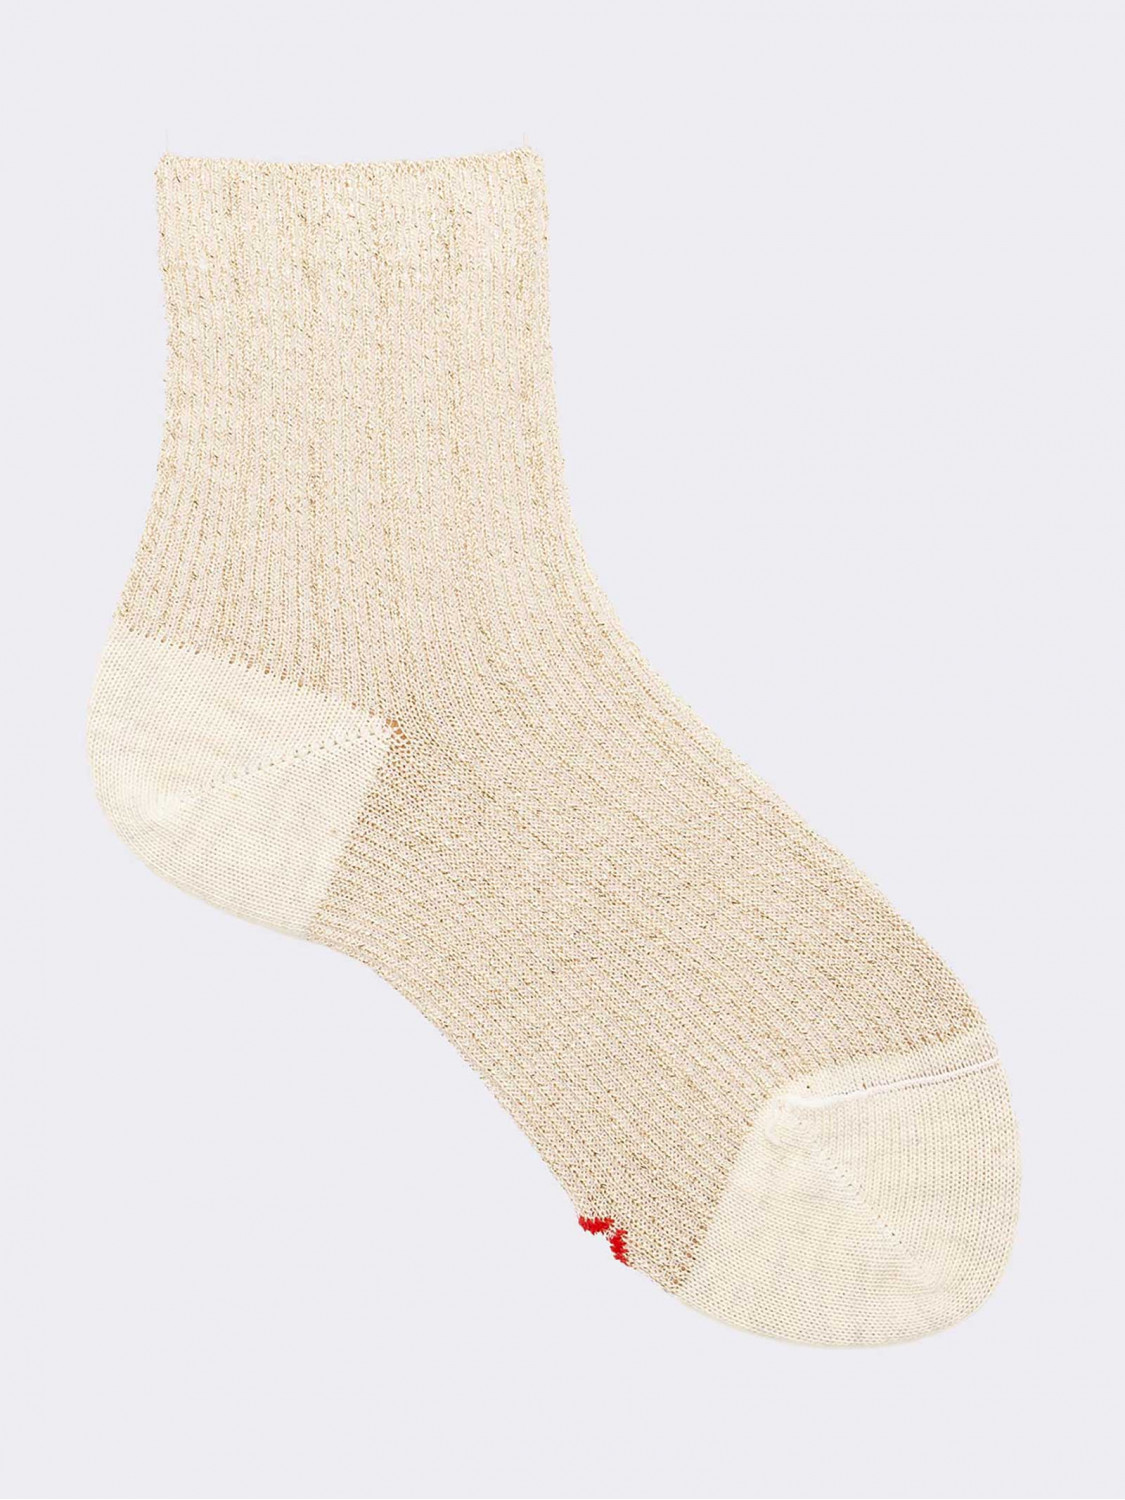 Crew socks with lurex pattern in warm cotton